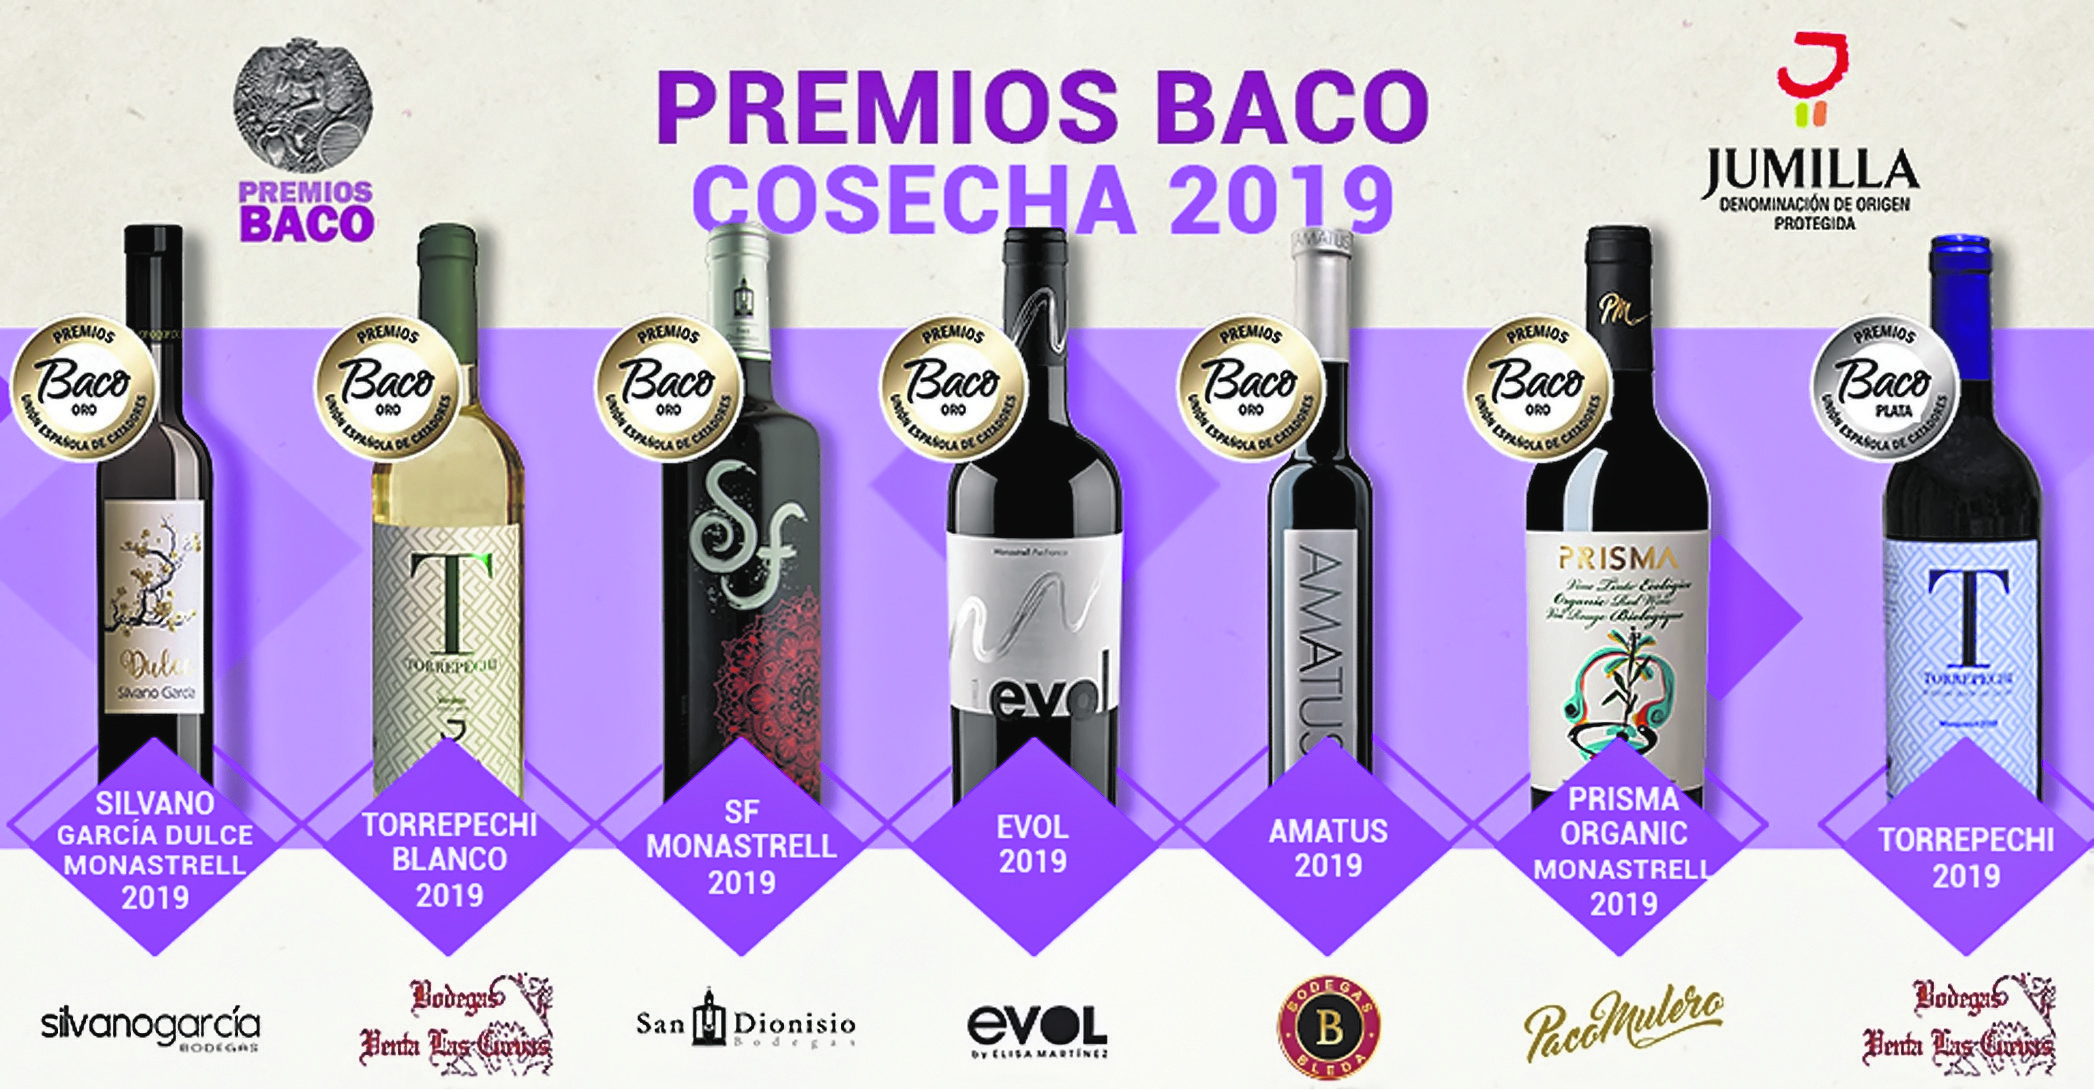 Siete vinos de la DOP Jumilla son distinguidos en los Premios Baco